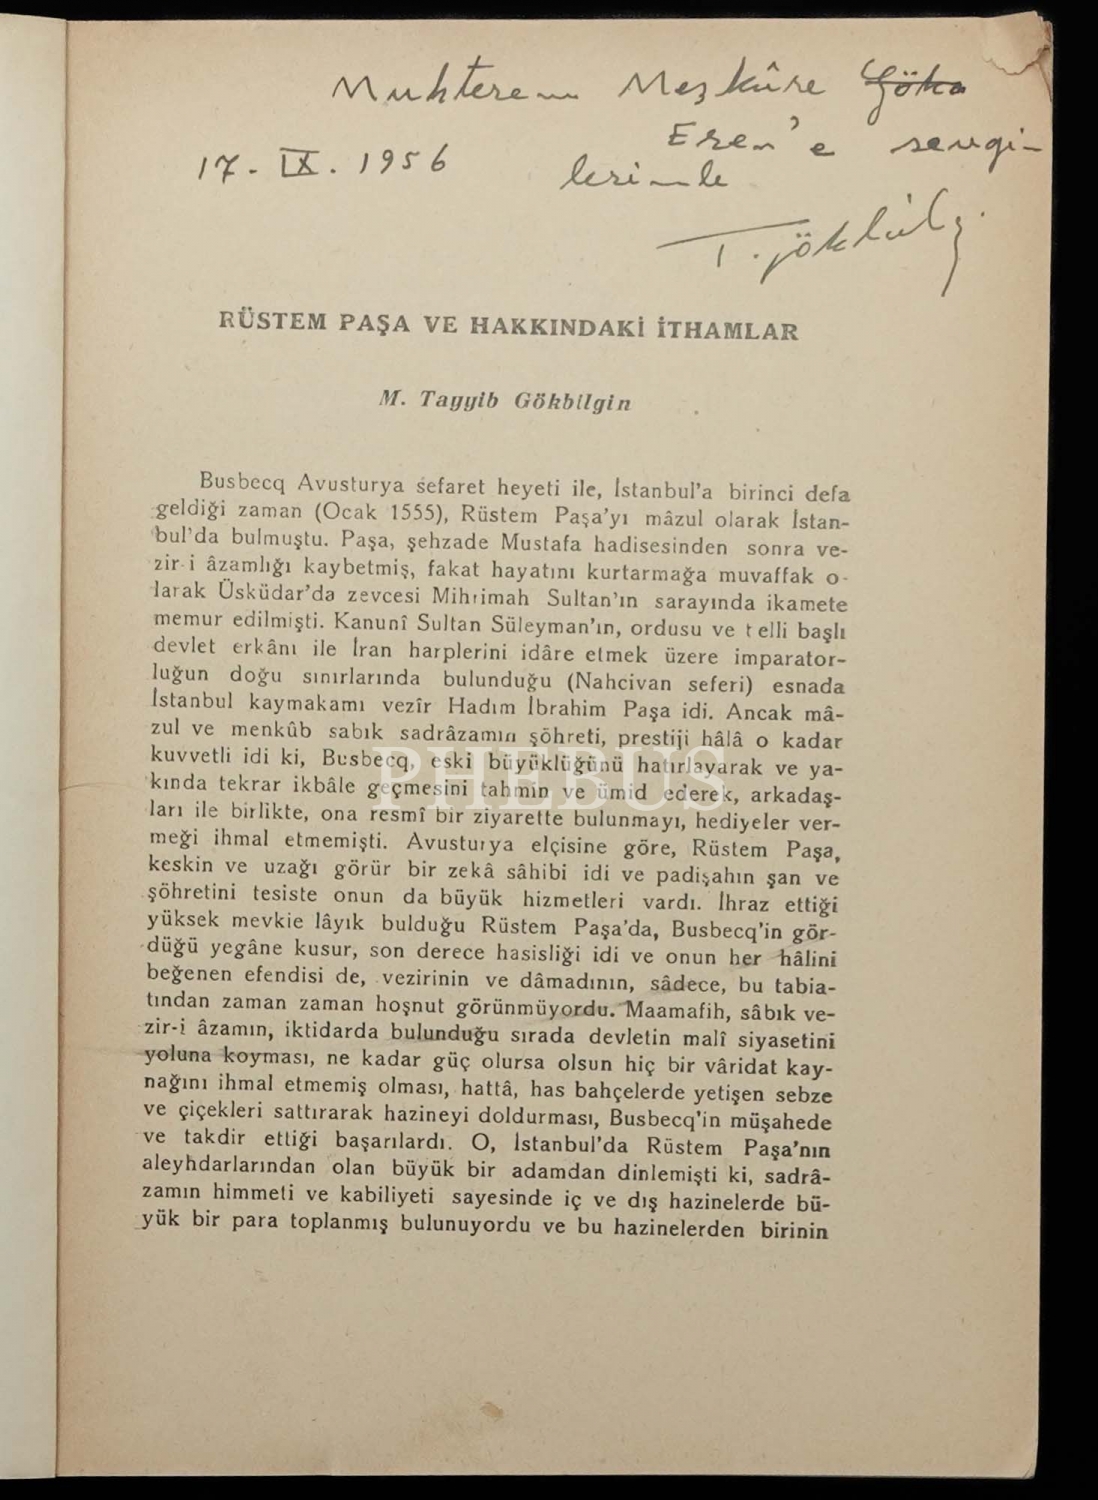 RÜSTEM PAŞA VE HAKKINDAKİ İTHAMLAR, M. Tayyib Gökbilgin, 1956, İstanbul Osman Yalçın Matbaası (Ayrı Basım), 11-50 sayfa aralığı, 17x24 cm...